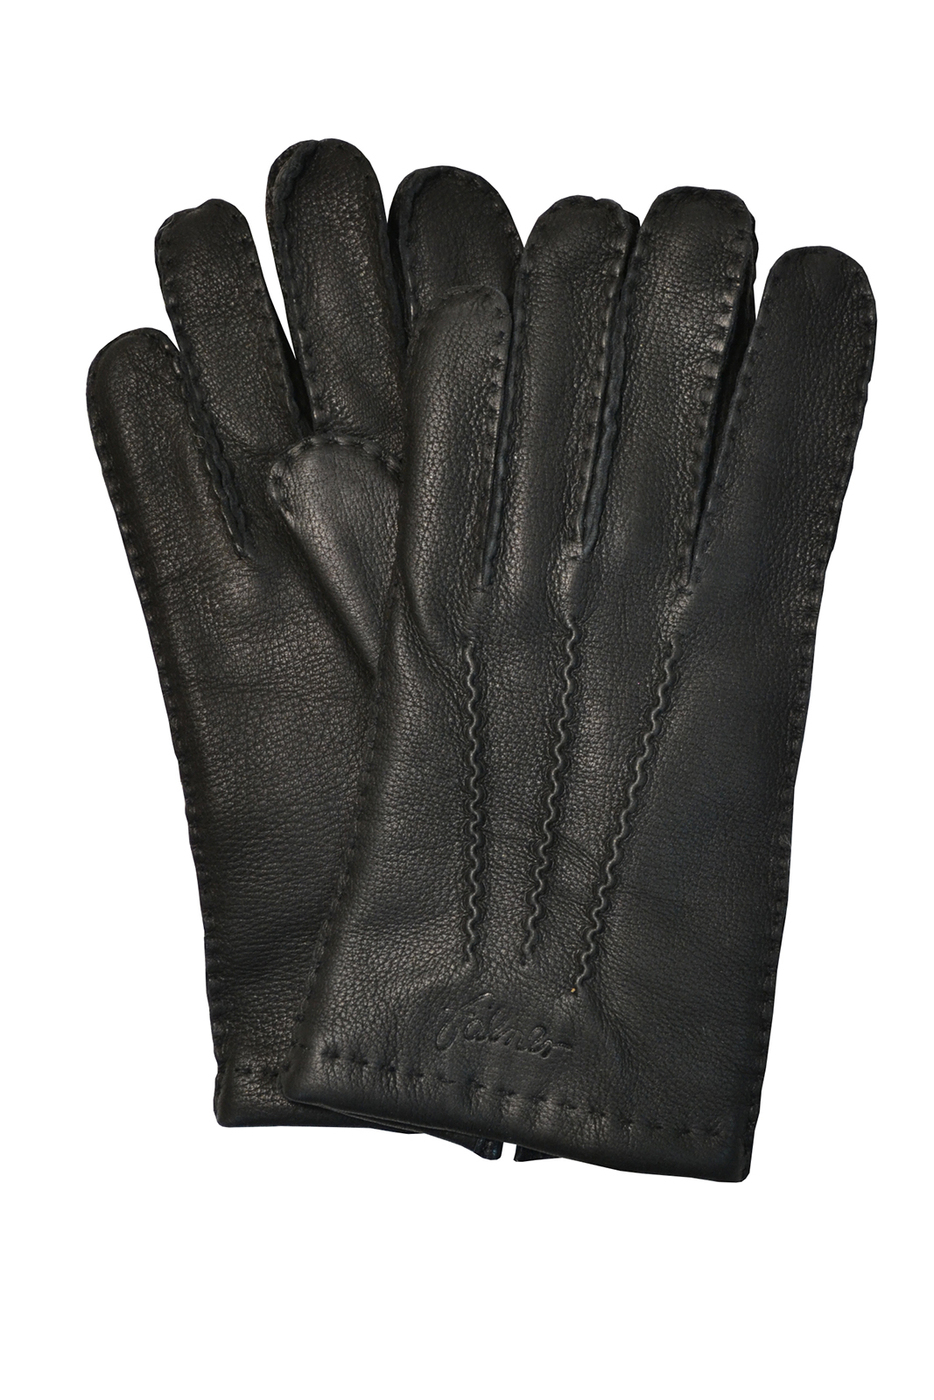 Купить кож перчатки мужские. Румынские кожаные перчатки Santex. Кожаные перчатки мужские. Кожаные перчатки мужские зимние. Кожаные перчатки мужские летние.